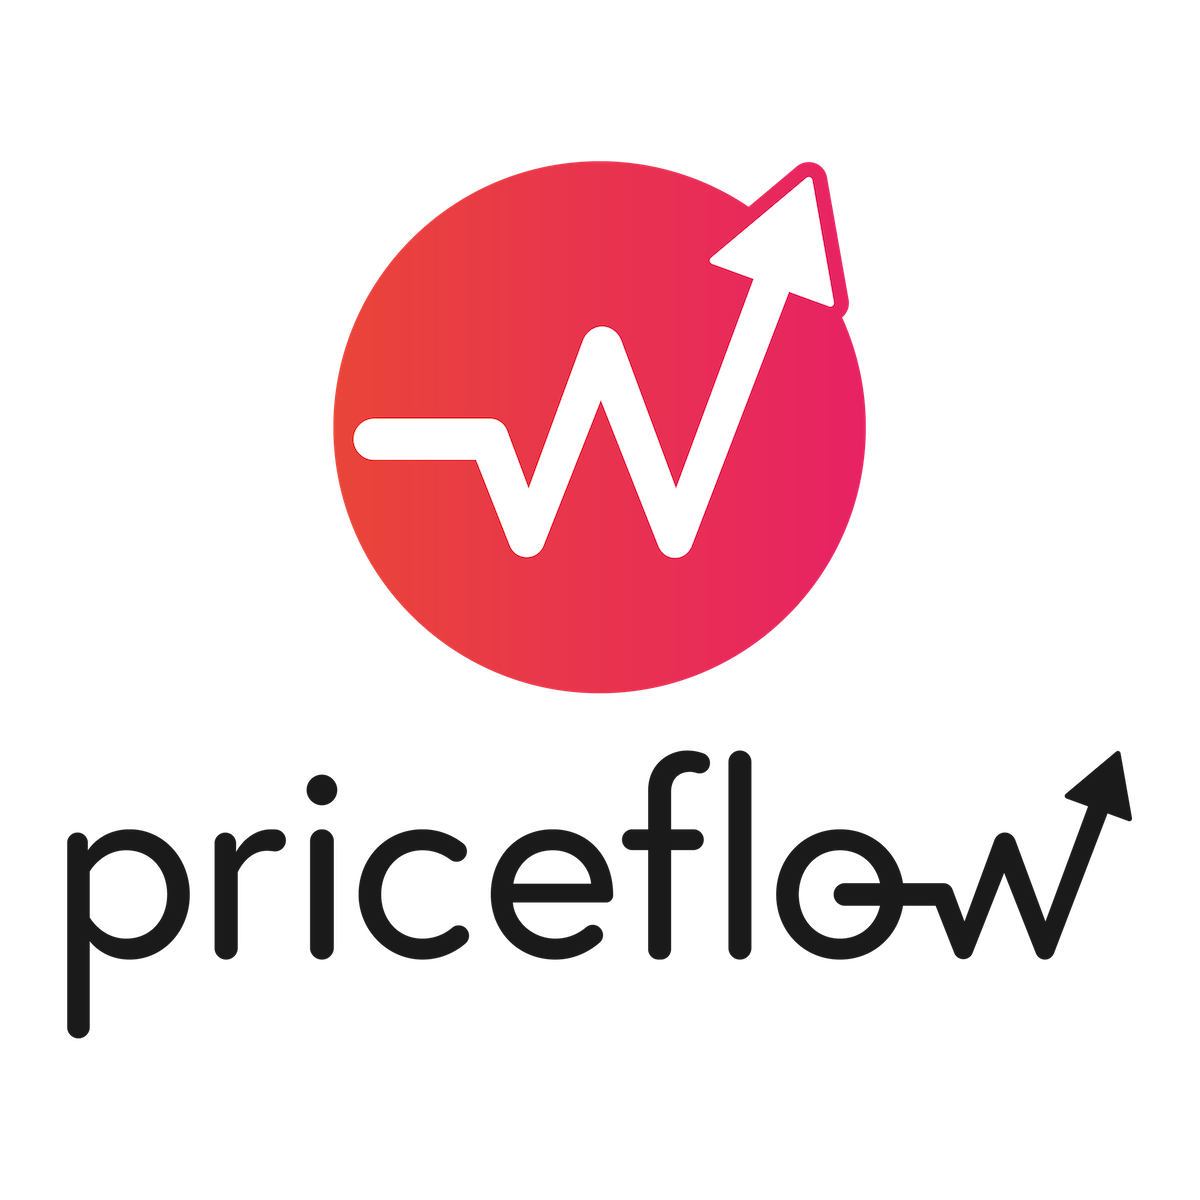 Priceflow